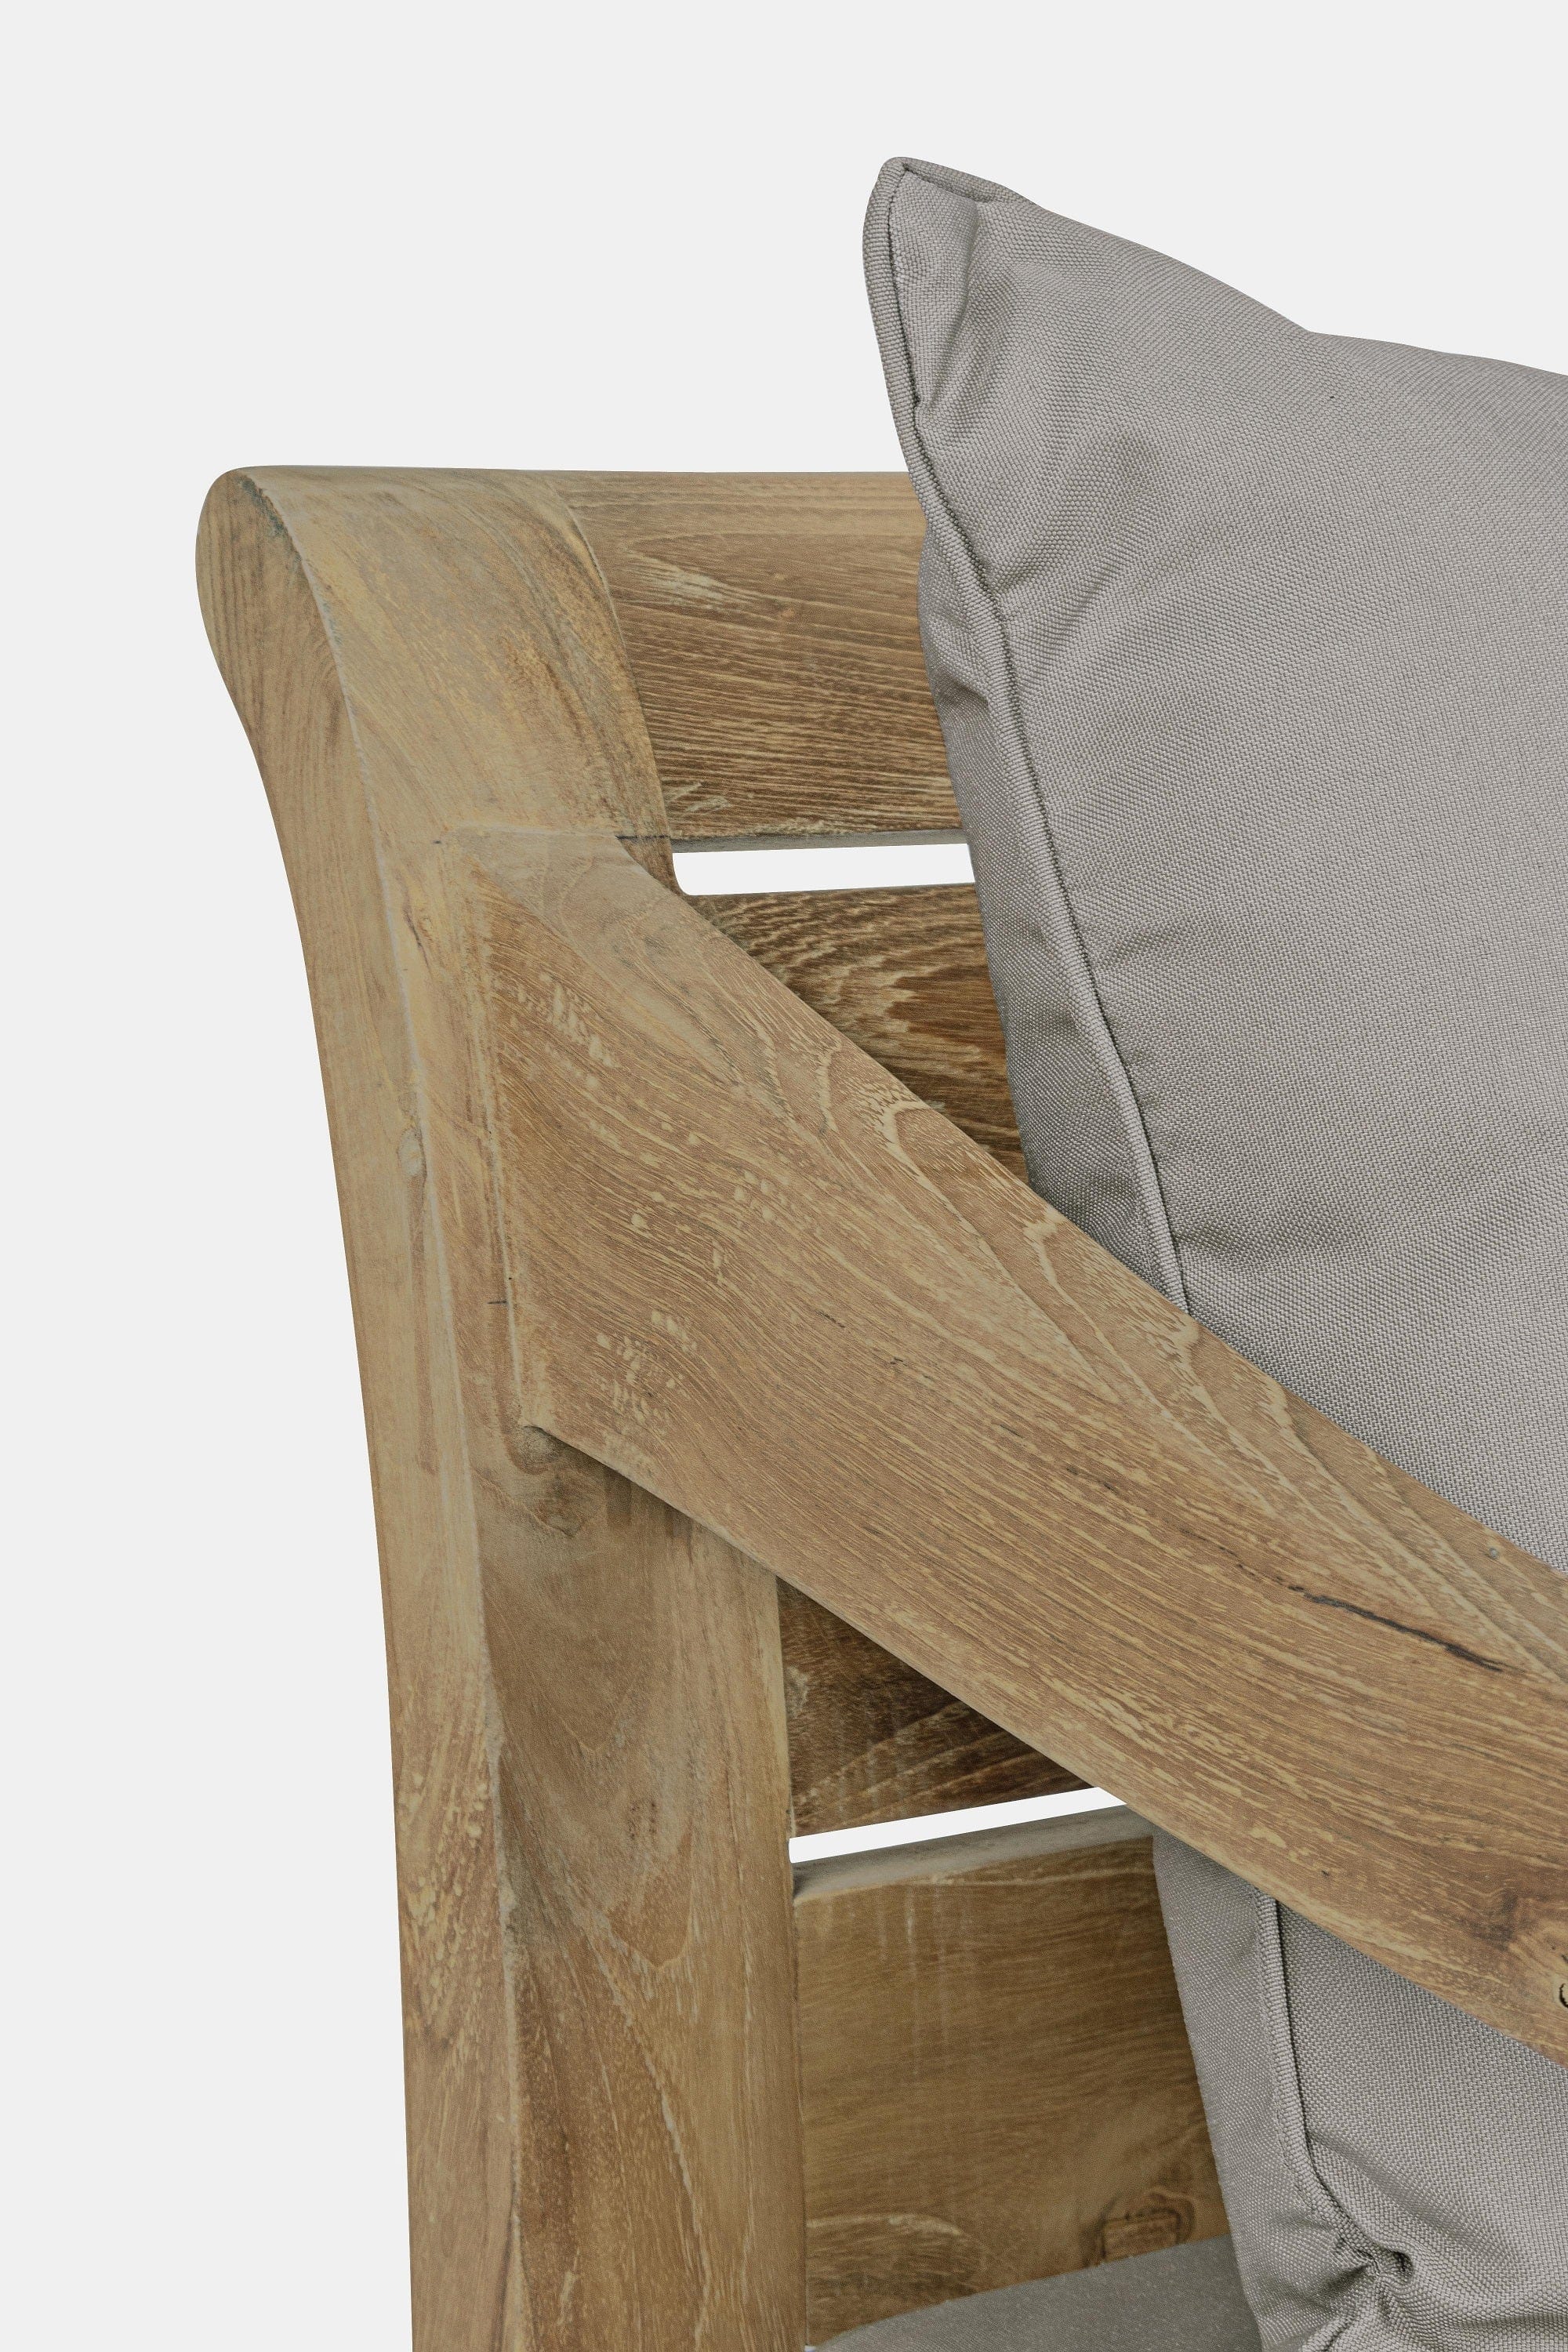 Bizzotto Canapea fixa pentru gradina / terasa, din lemn de tec, 3 locuri, Karuba Grej / Natural, l165xA80xH75 cm